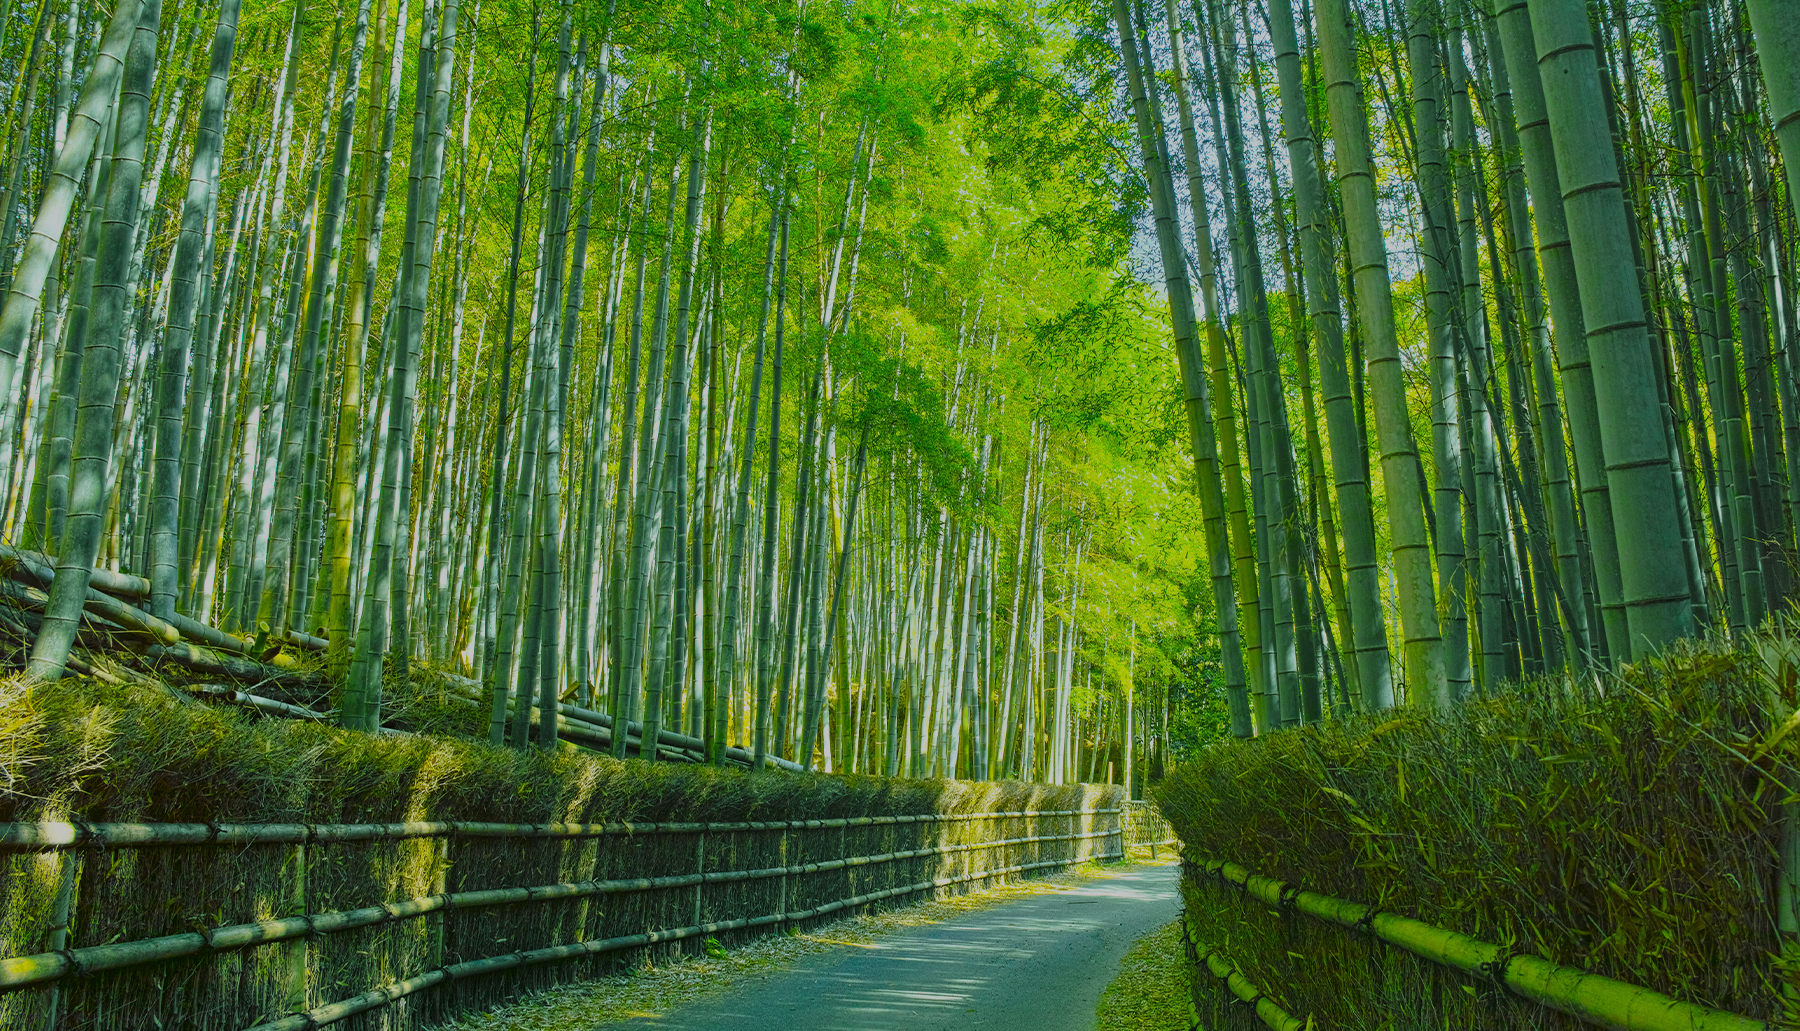 京都が紡いできた伝統と革新、 それこそがサスティナブルな世界へと繋がる